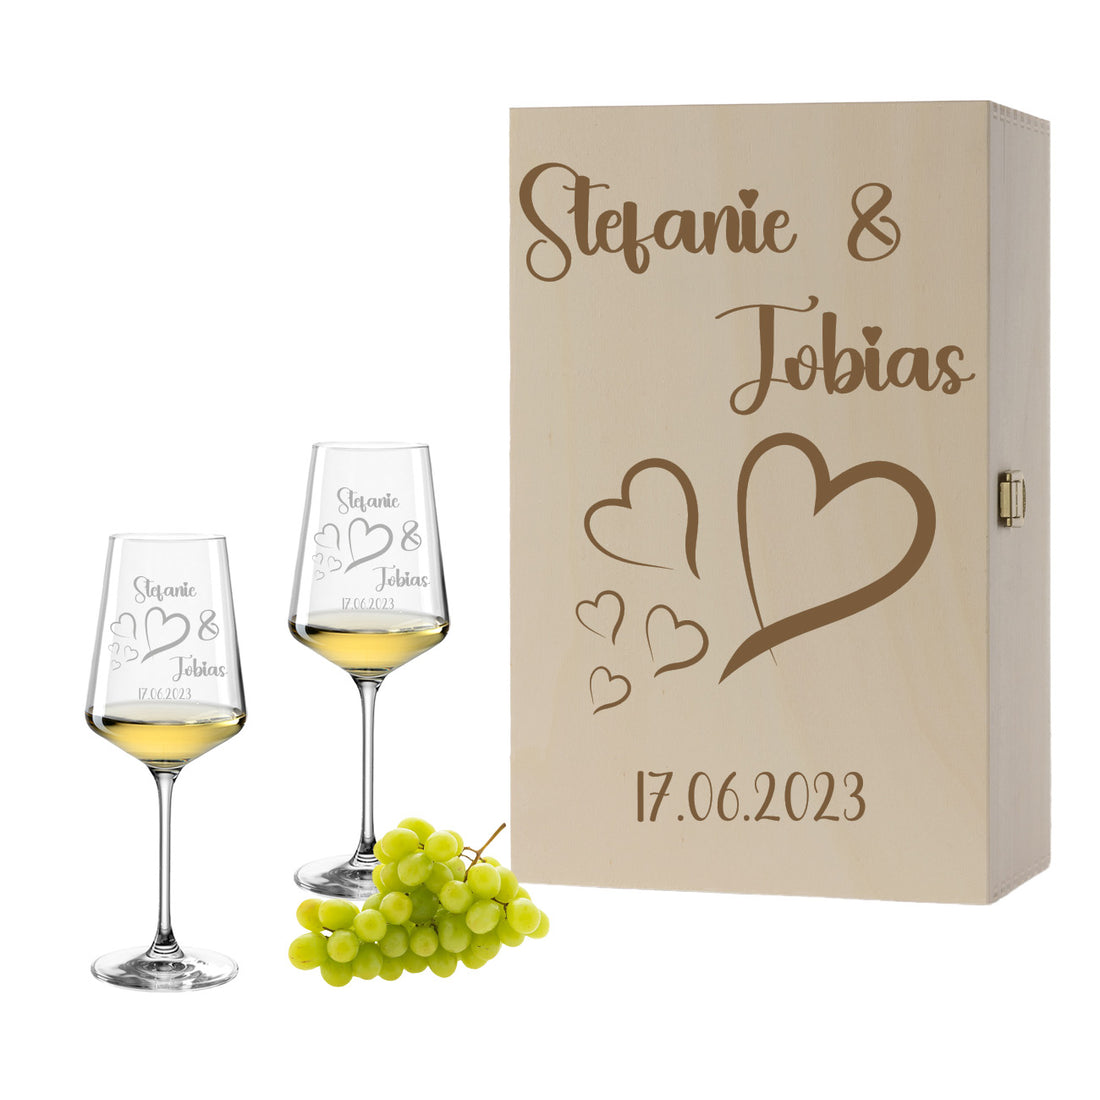 Weinglas mit Gravur Leonardo Puccini "LIEBES GLAS HERZ4" 2 Gläser und Holzbox groß mit Wunschname & Datum